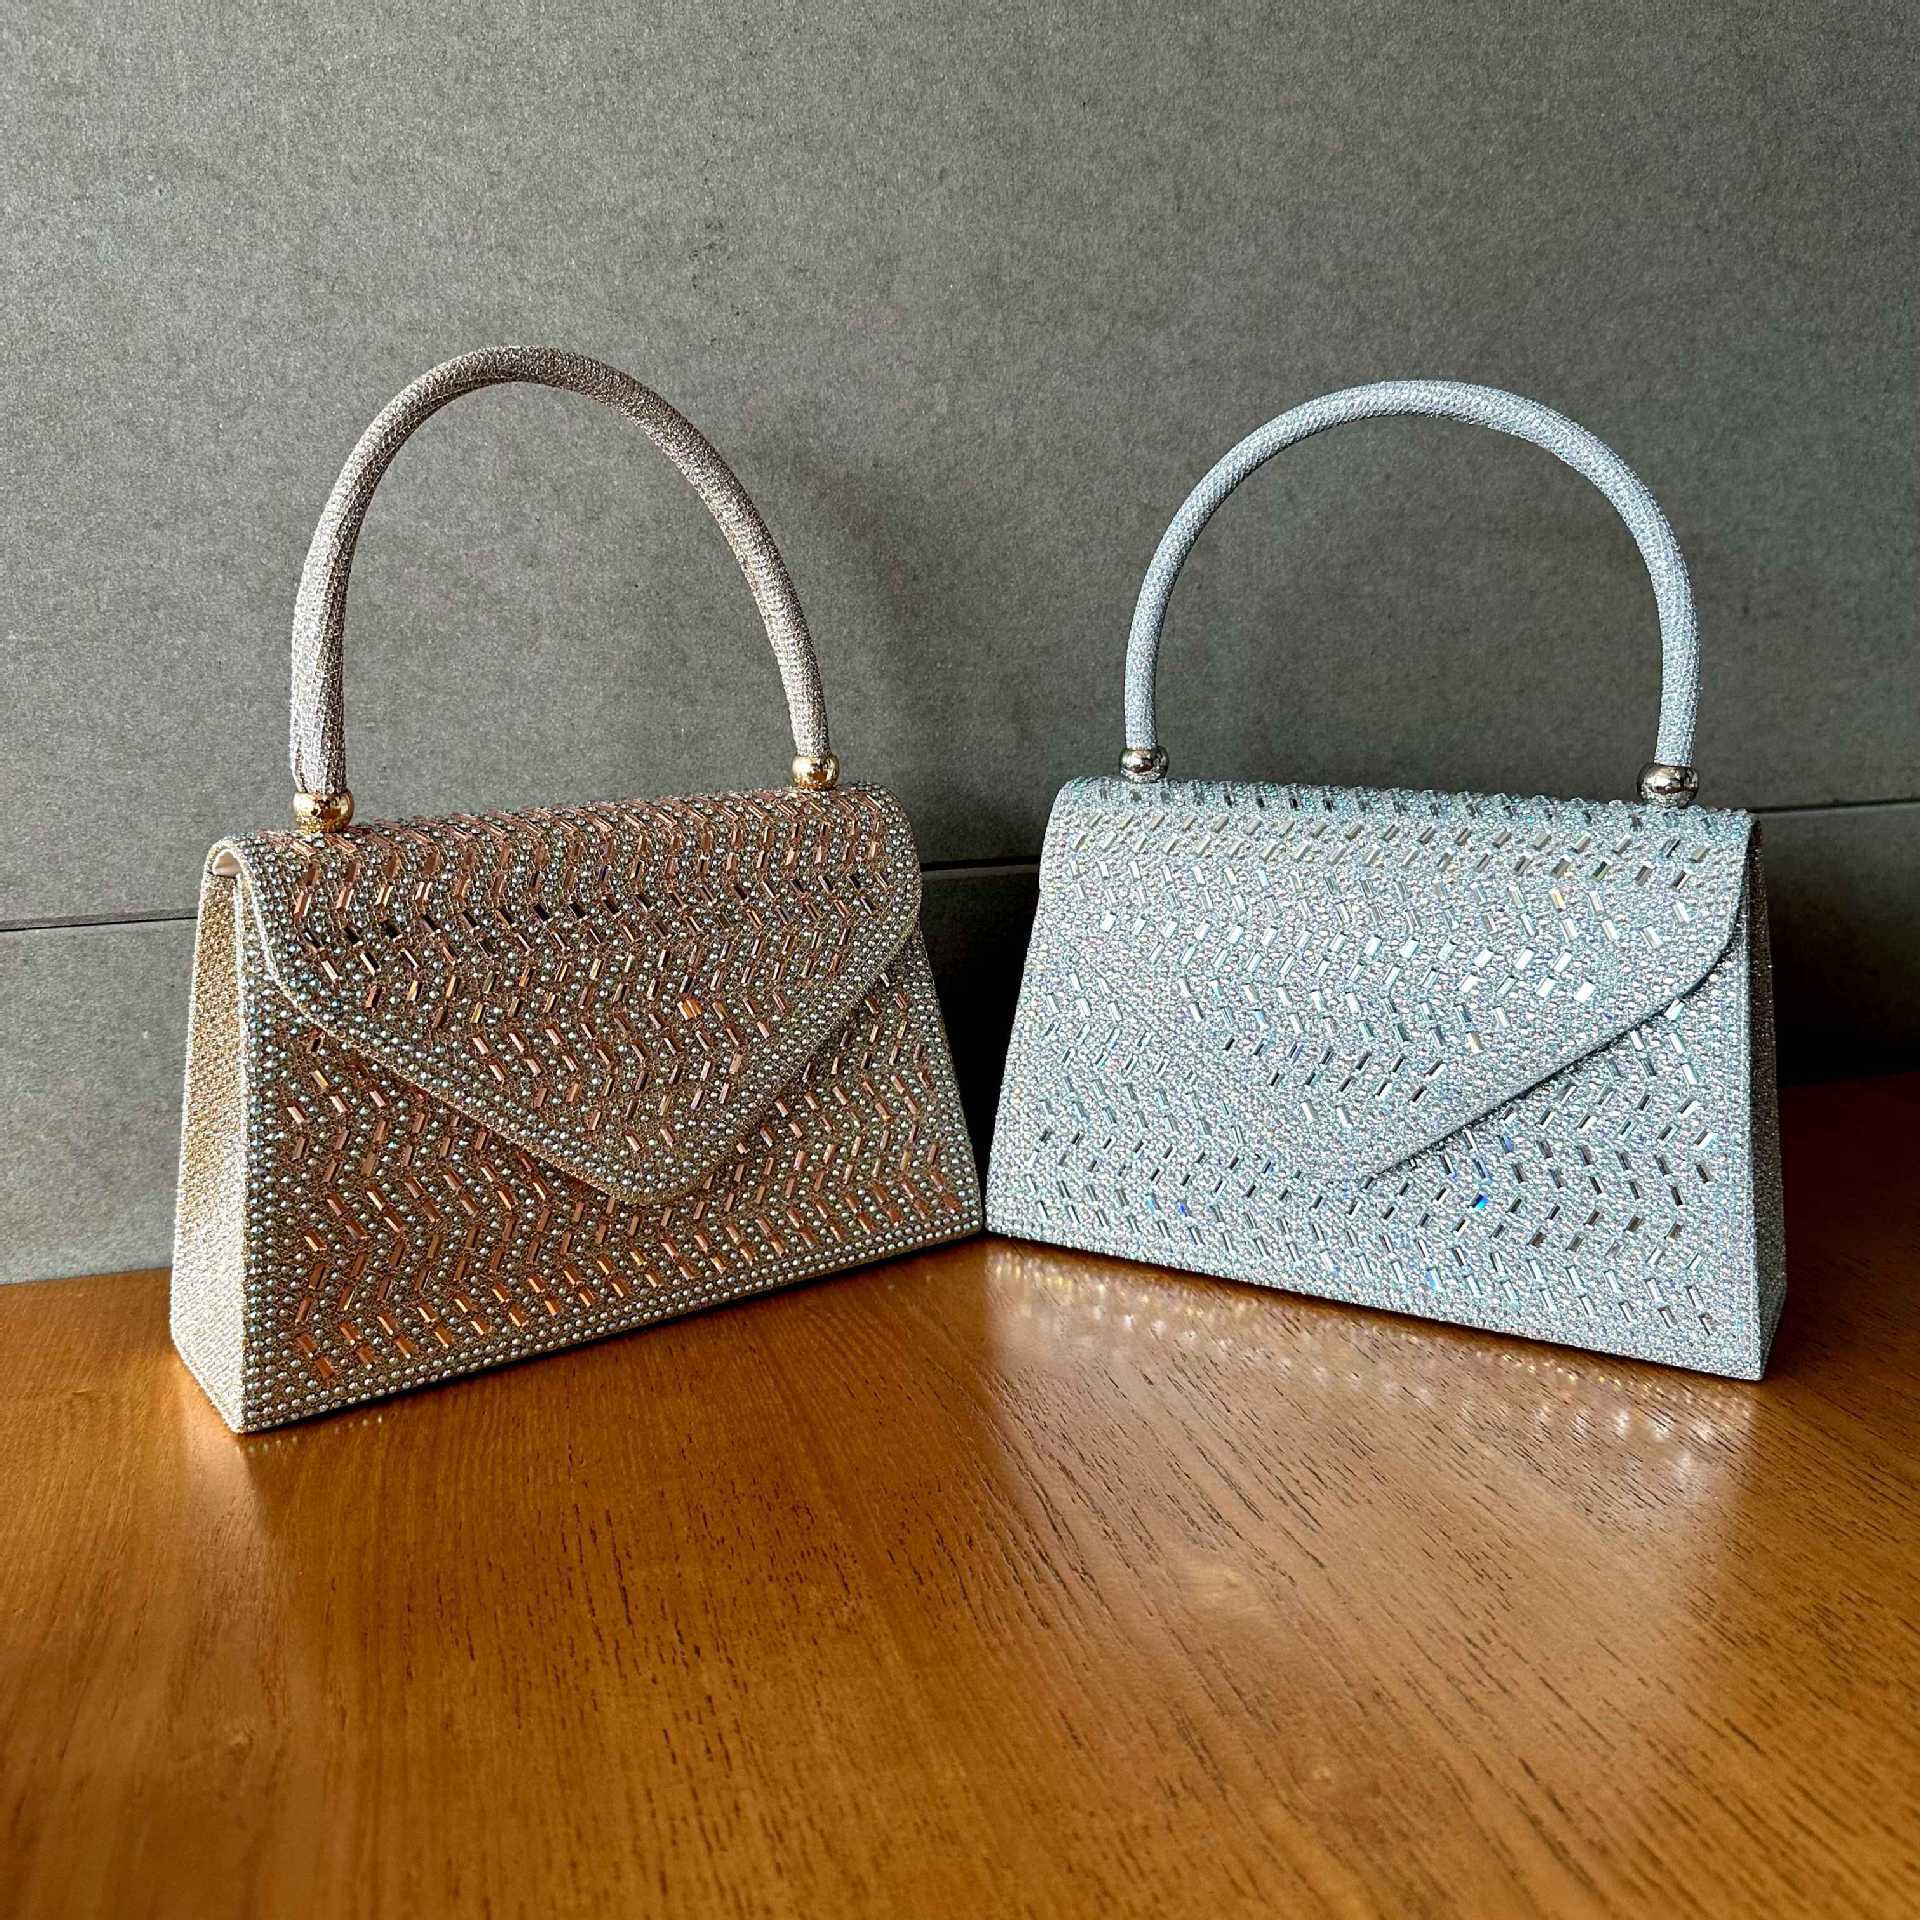 Medium-soft-handbag-with-open-pocket-design